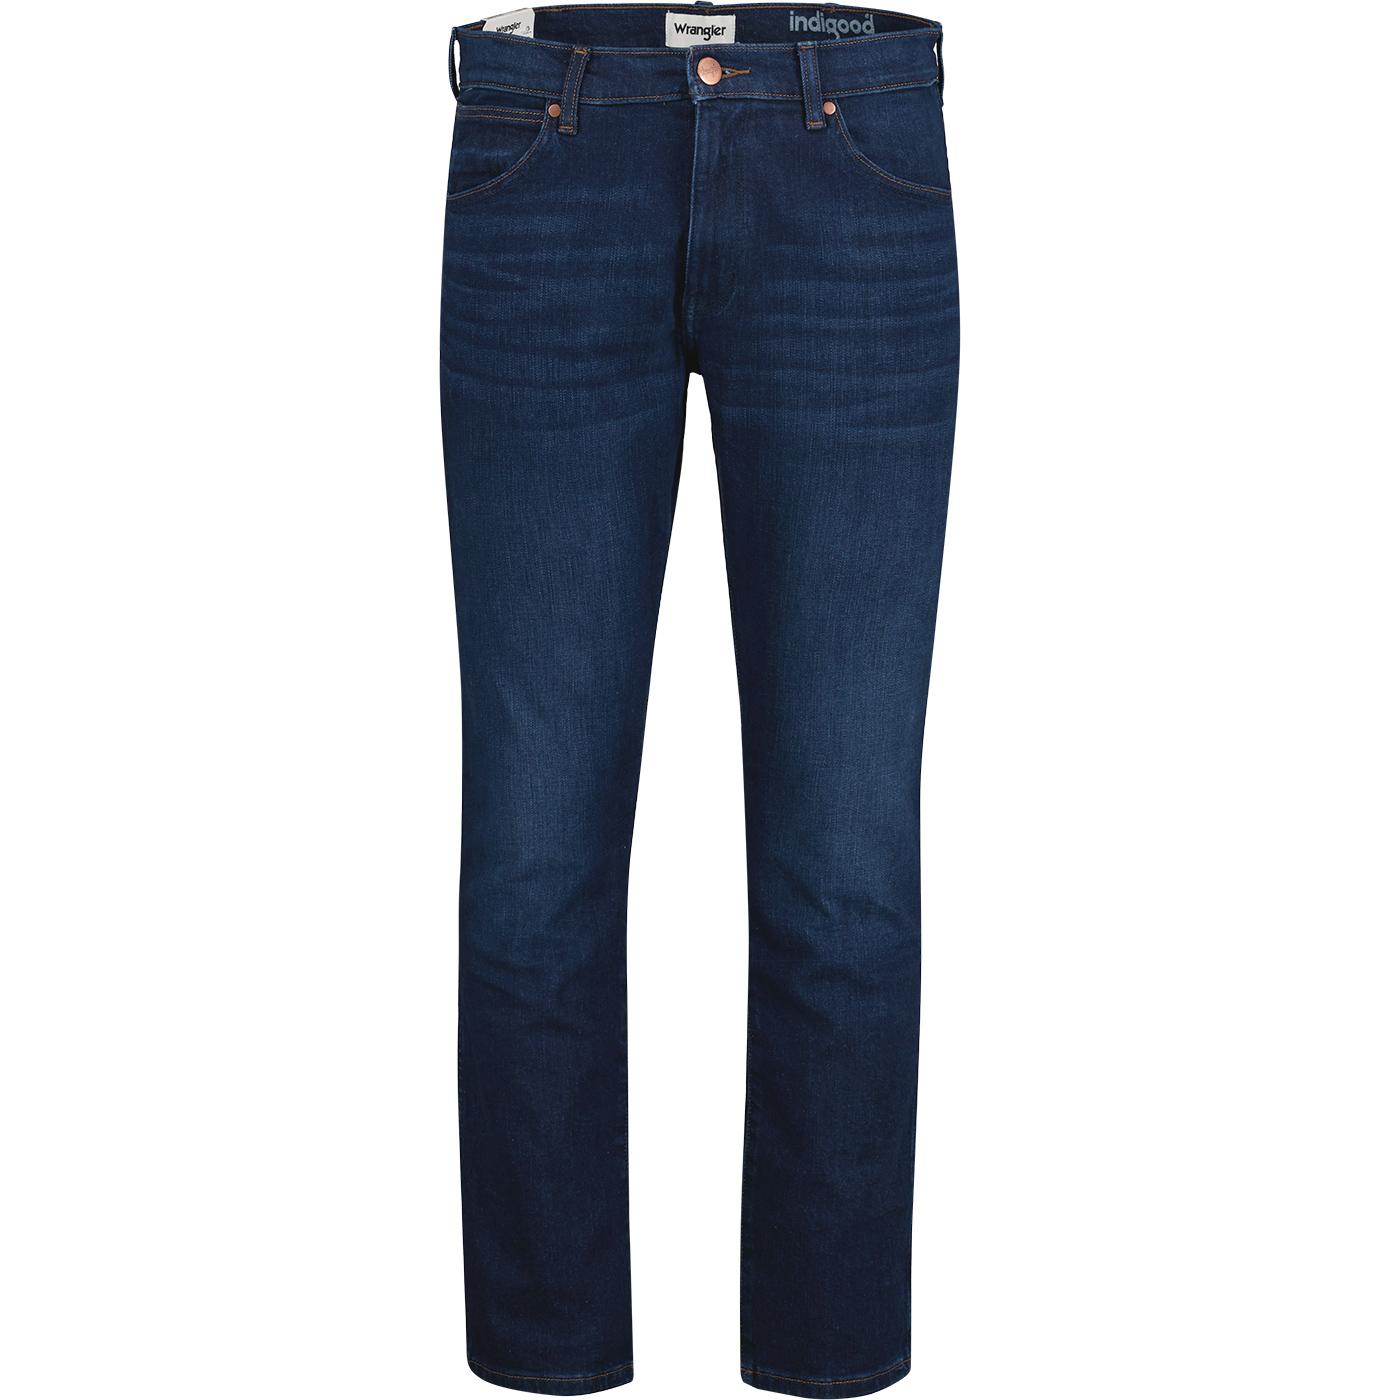 Larston WRANGLER 812 Slim Taper Jeans THE BULLSEYE